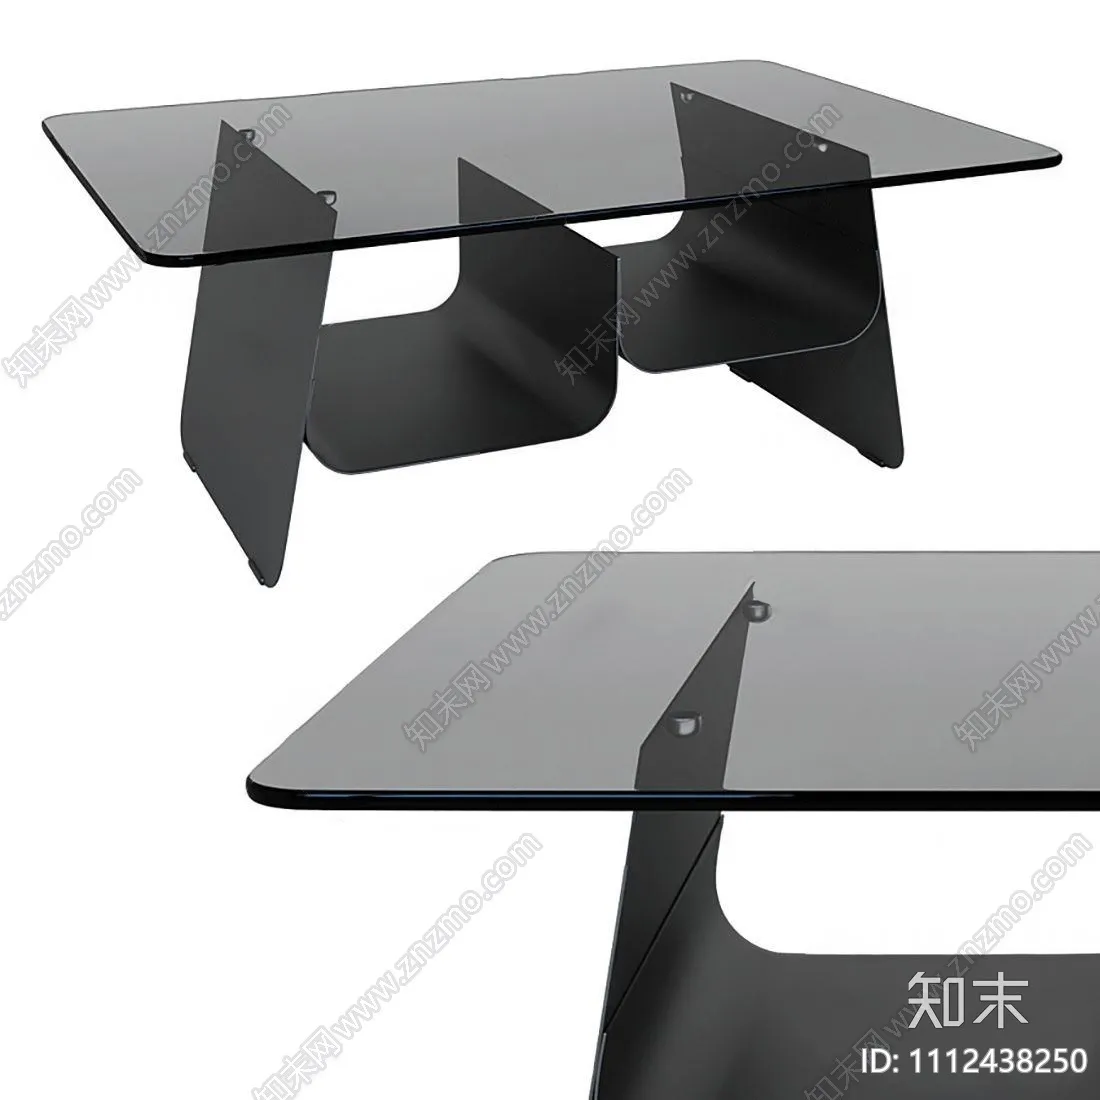 TEA TABLES 3D MODELS – 014 – PRO